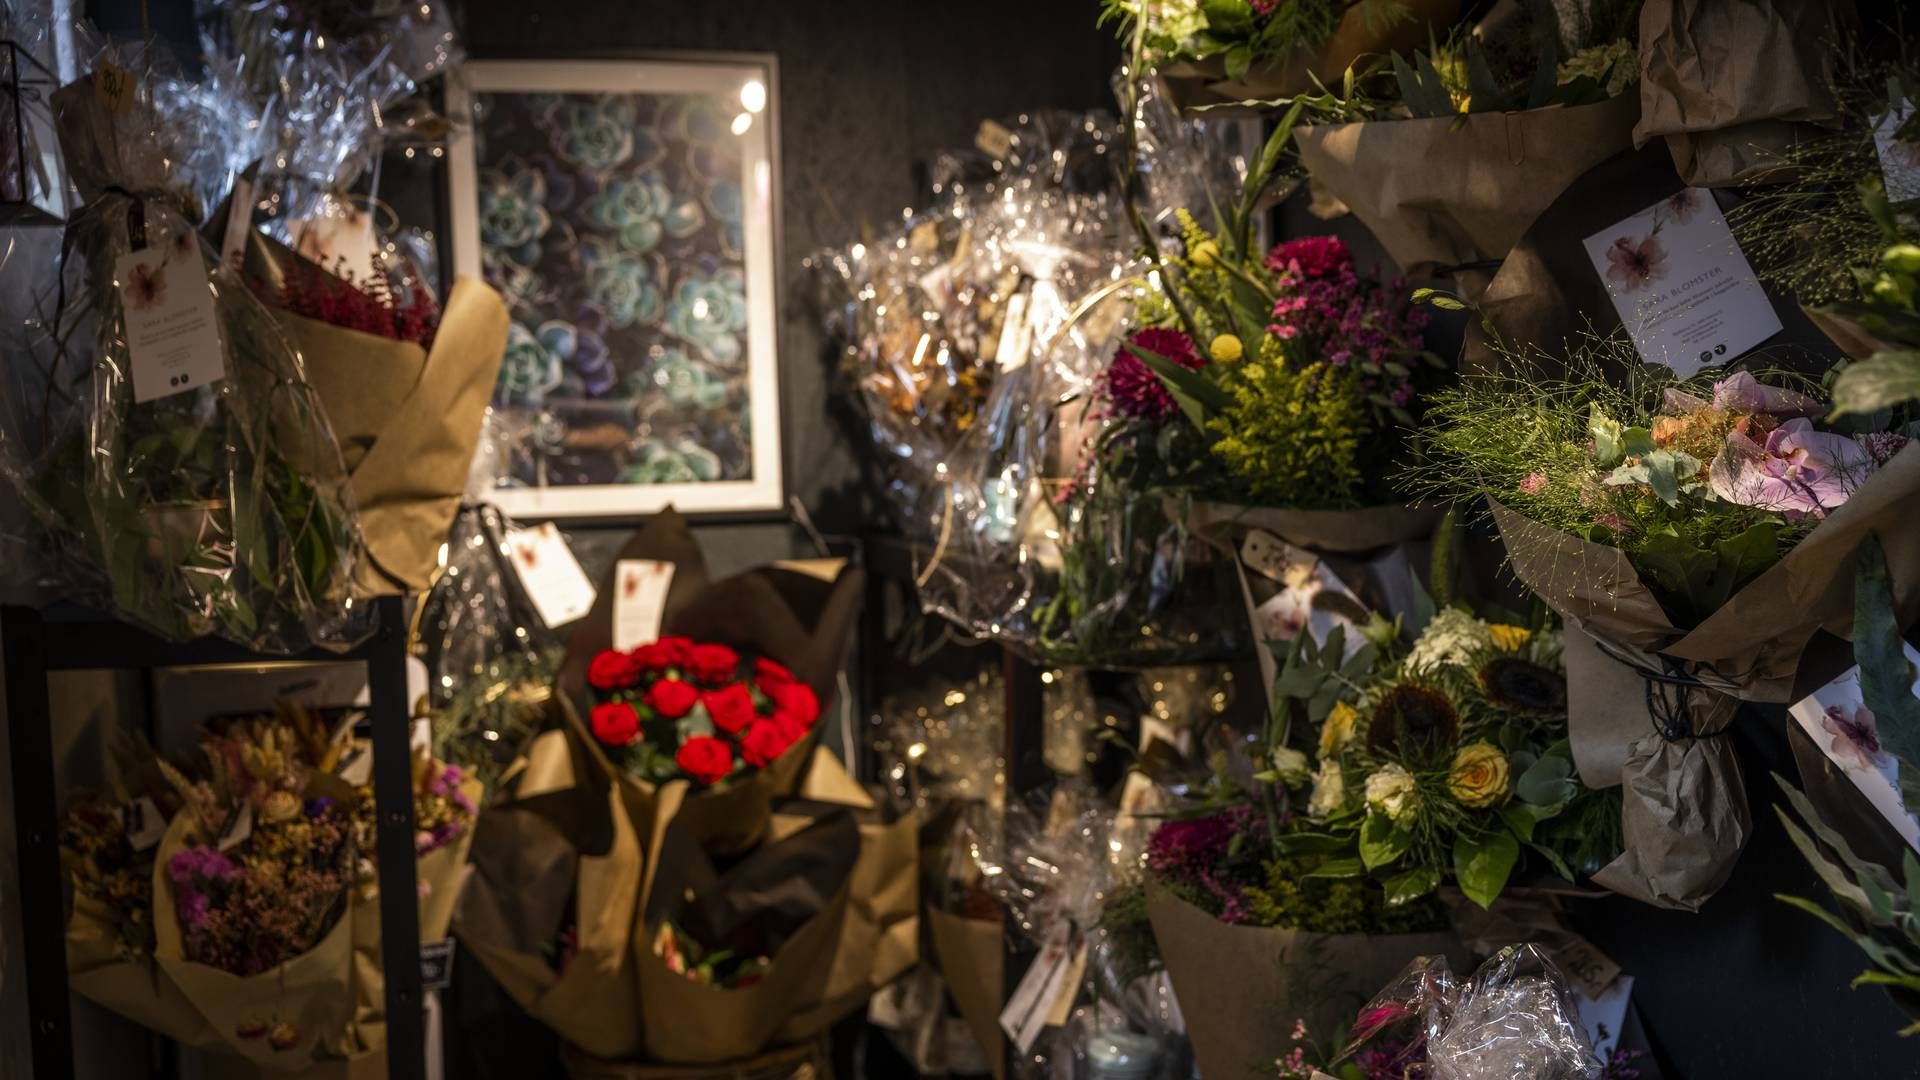 Blomsterhuset Ramdal dropper igen muligheden for selvbetjening i butikkerne i Tørring og Hedensted. Men indehaveren nævner en automat som en fremtidig mulighed. | Foto: Marcus Emil Christensen